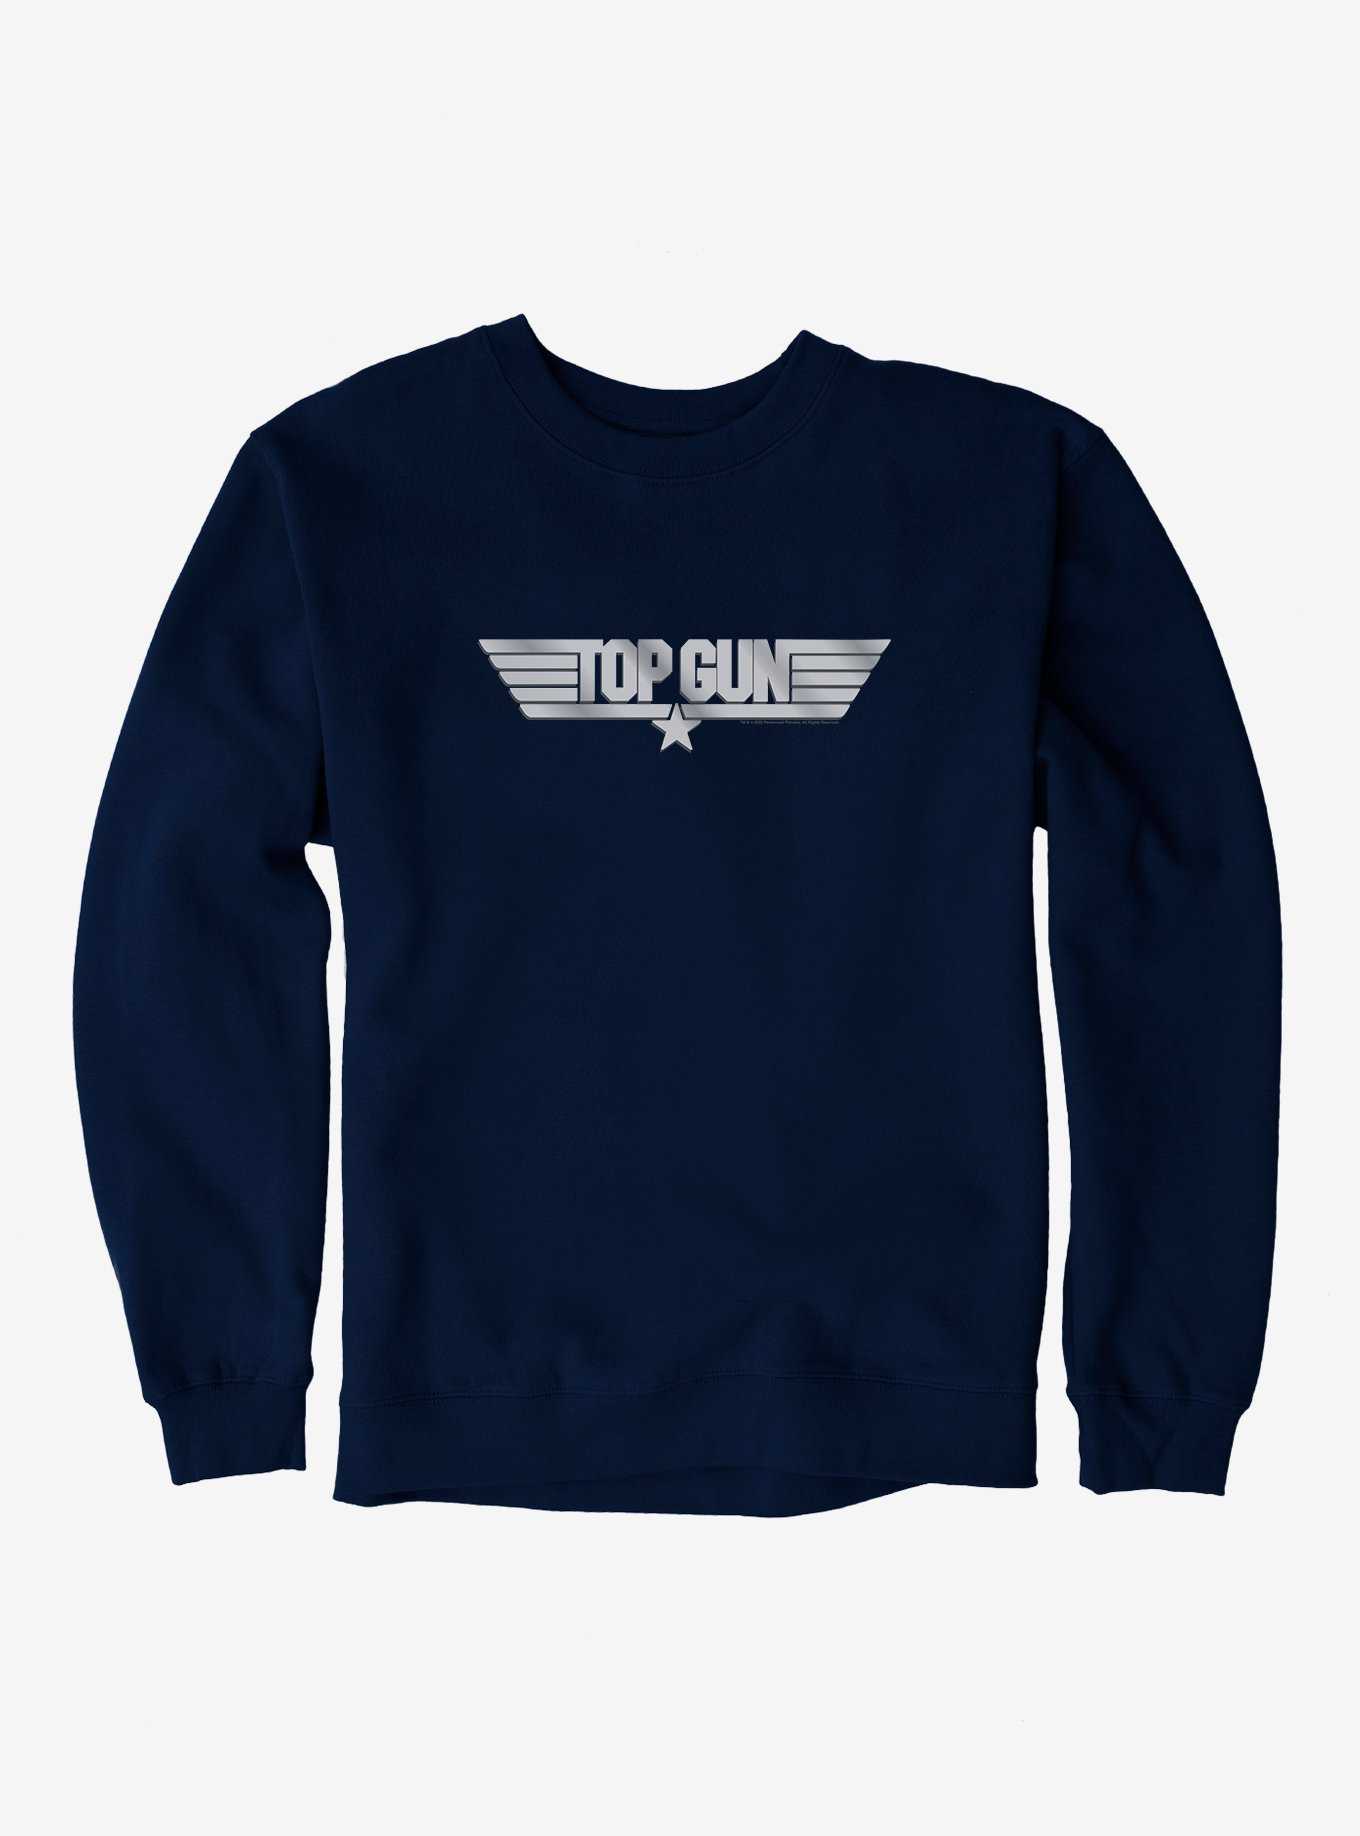 Hot Gun Merchandise OFFICIAL & Top | Shirts Topic